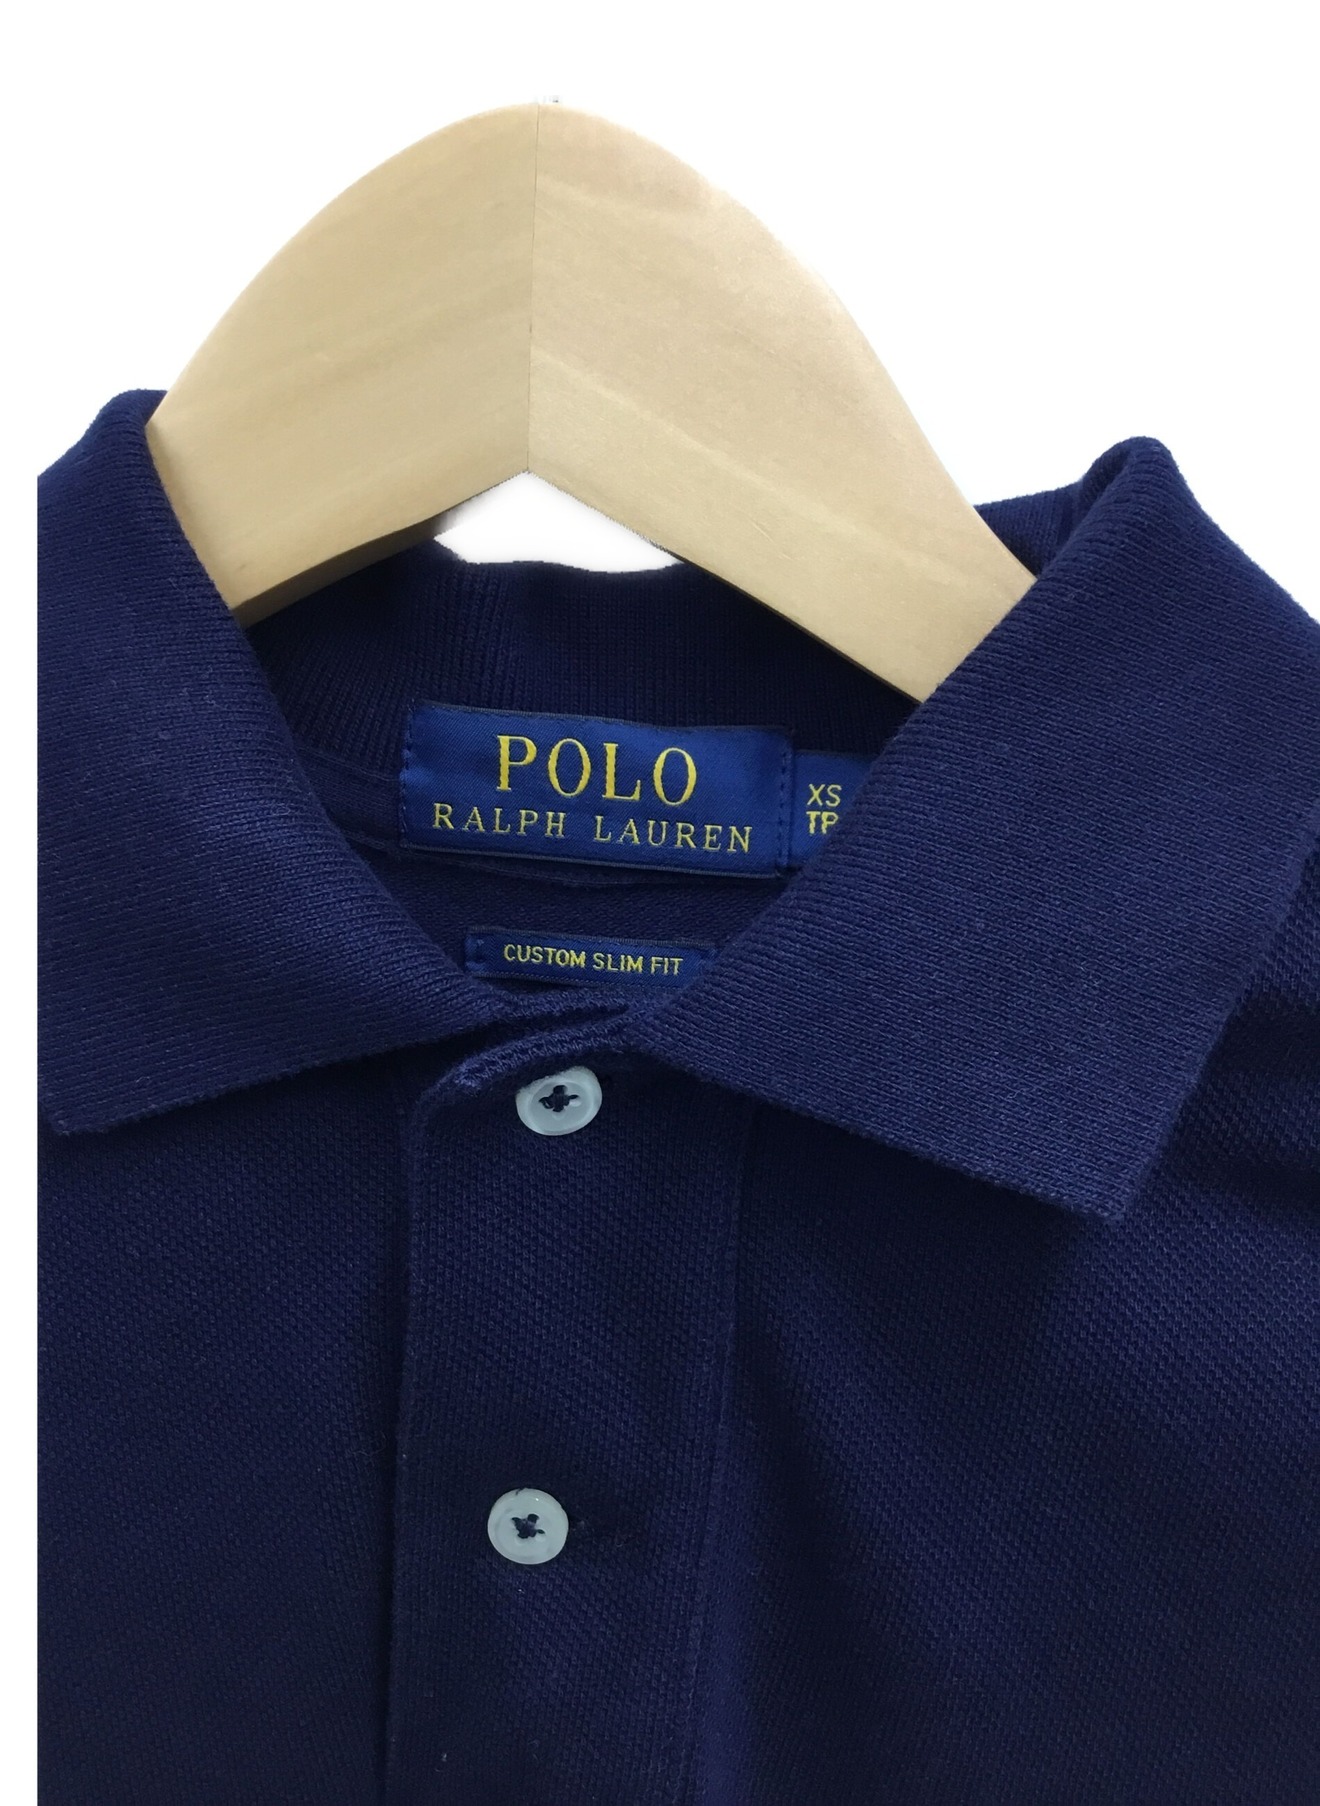 POLO RALPH LAUREN (ポロ・ラルフローレン) ポロシャツ ネイビー サイズ:XS